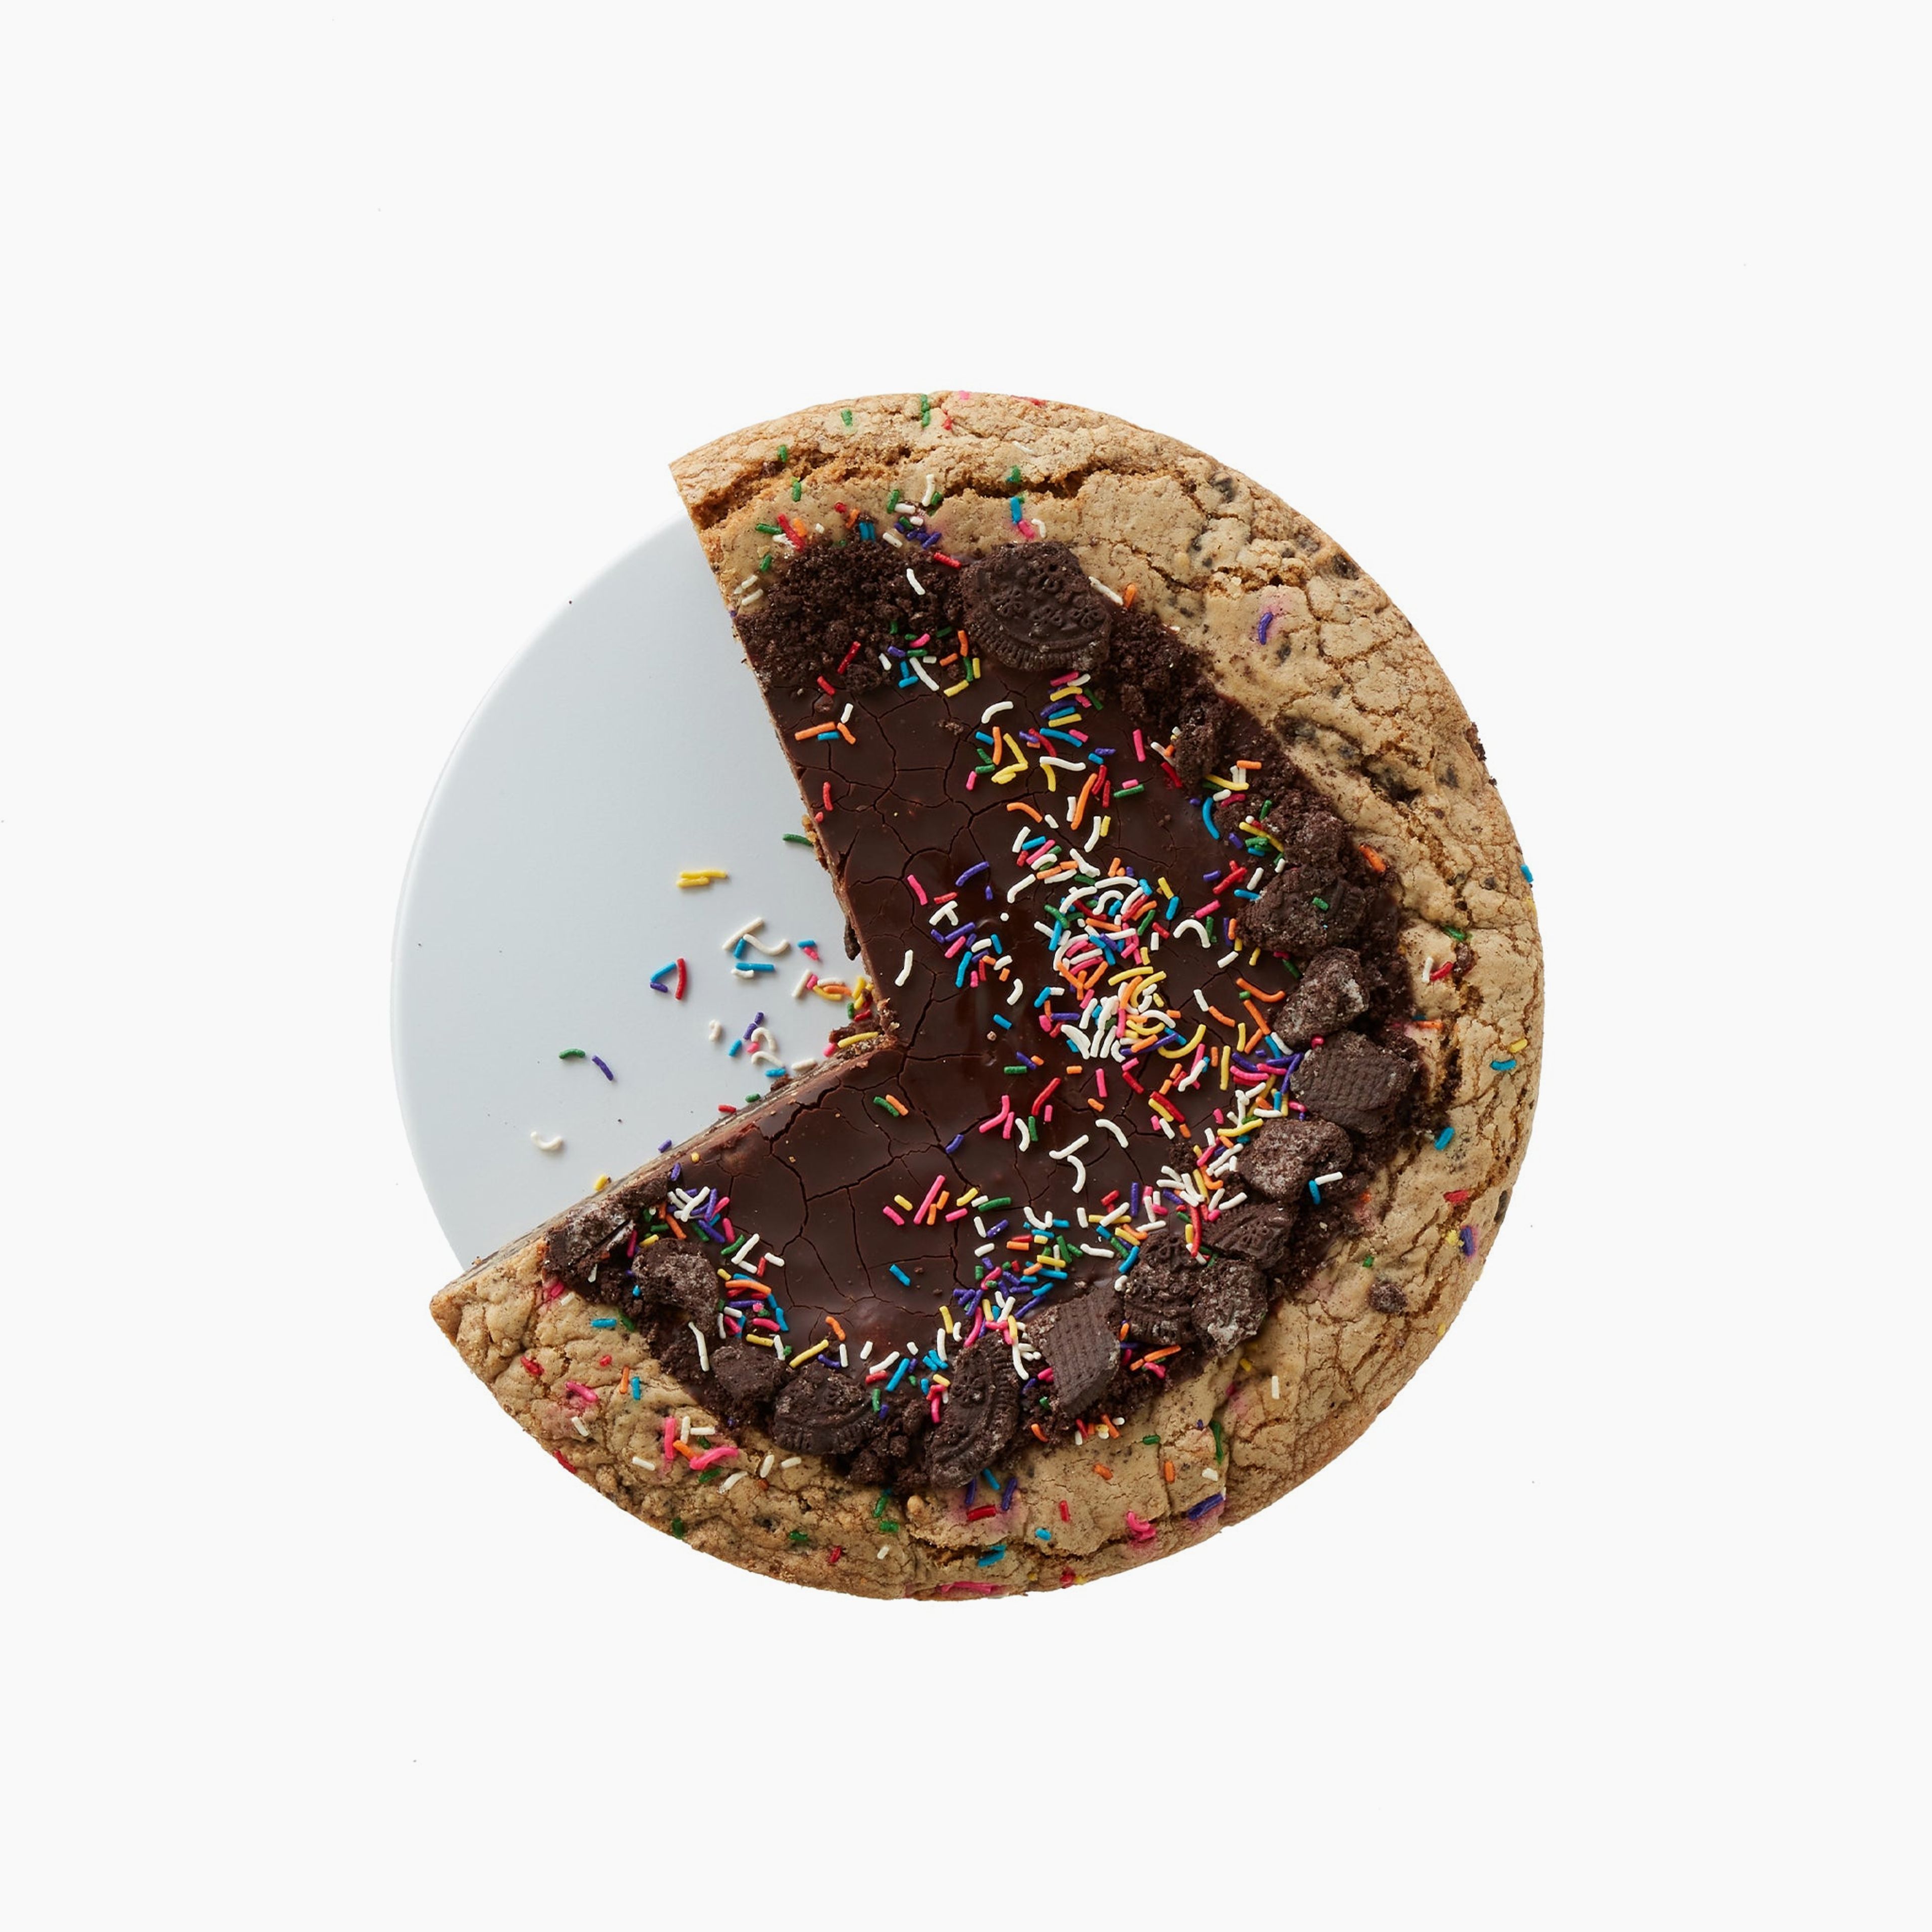 6 inch Cookies 'n Cream Cookie Cake